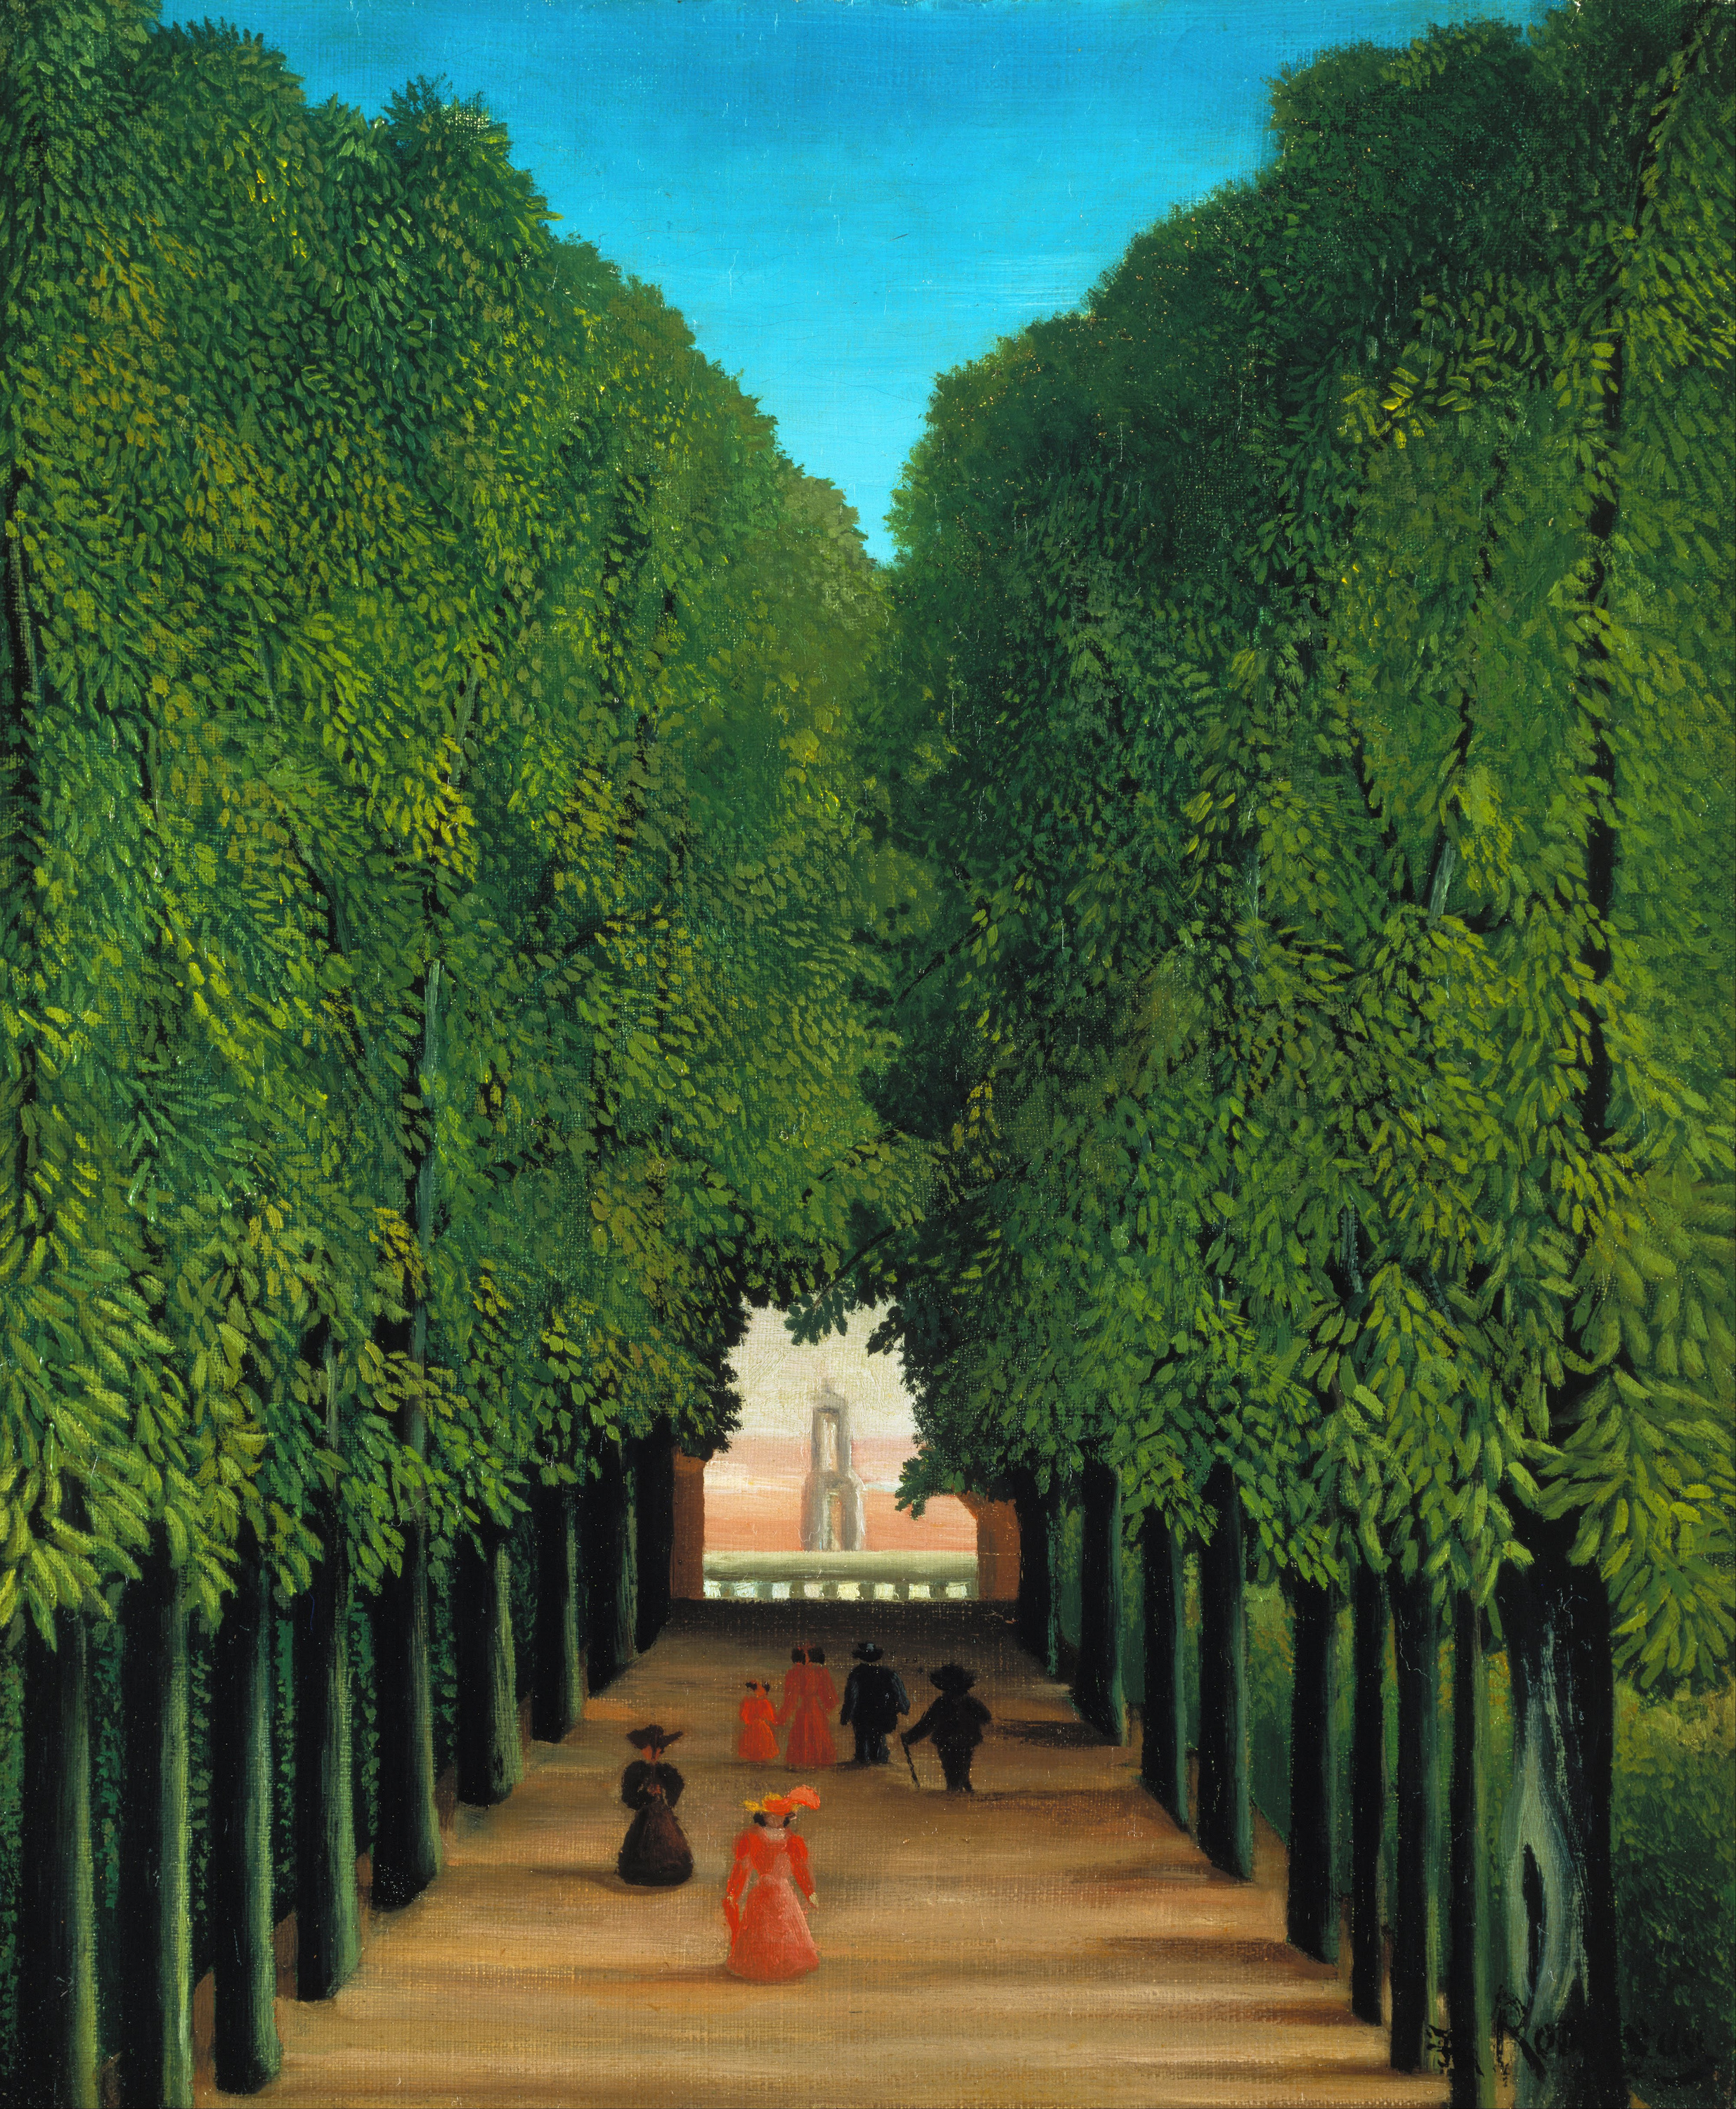 L'avenue du parc de Saint-Cloud by Henri Rousseau - Vers 1908 - 46.2 x 37.6 cm 